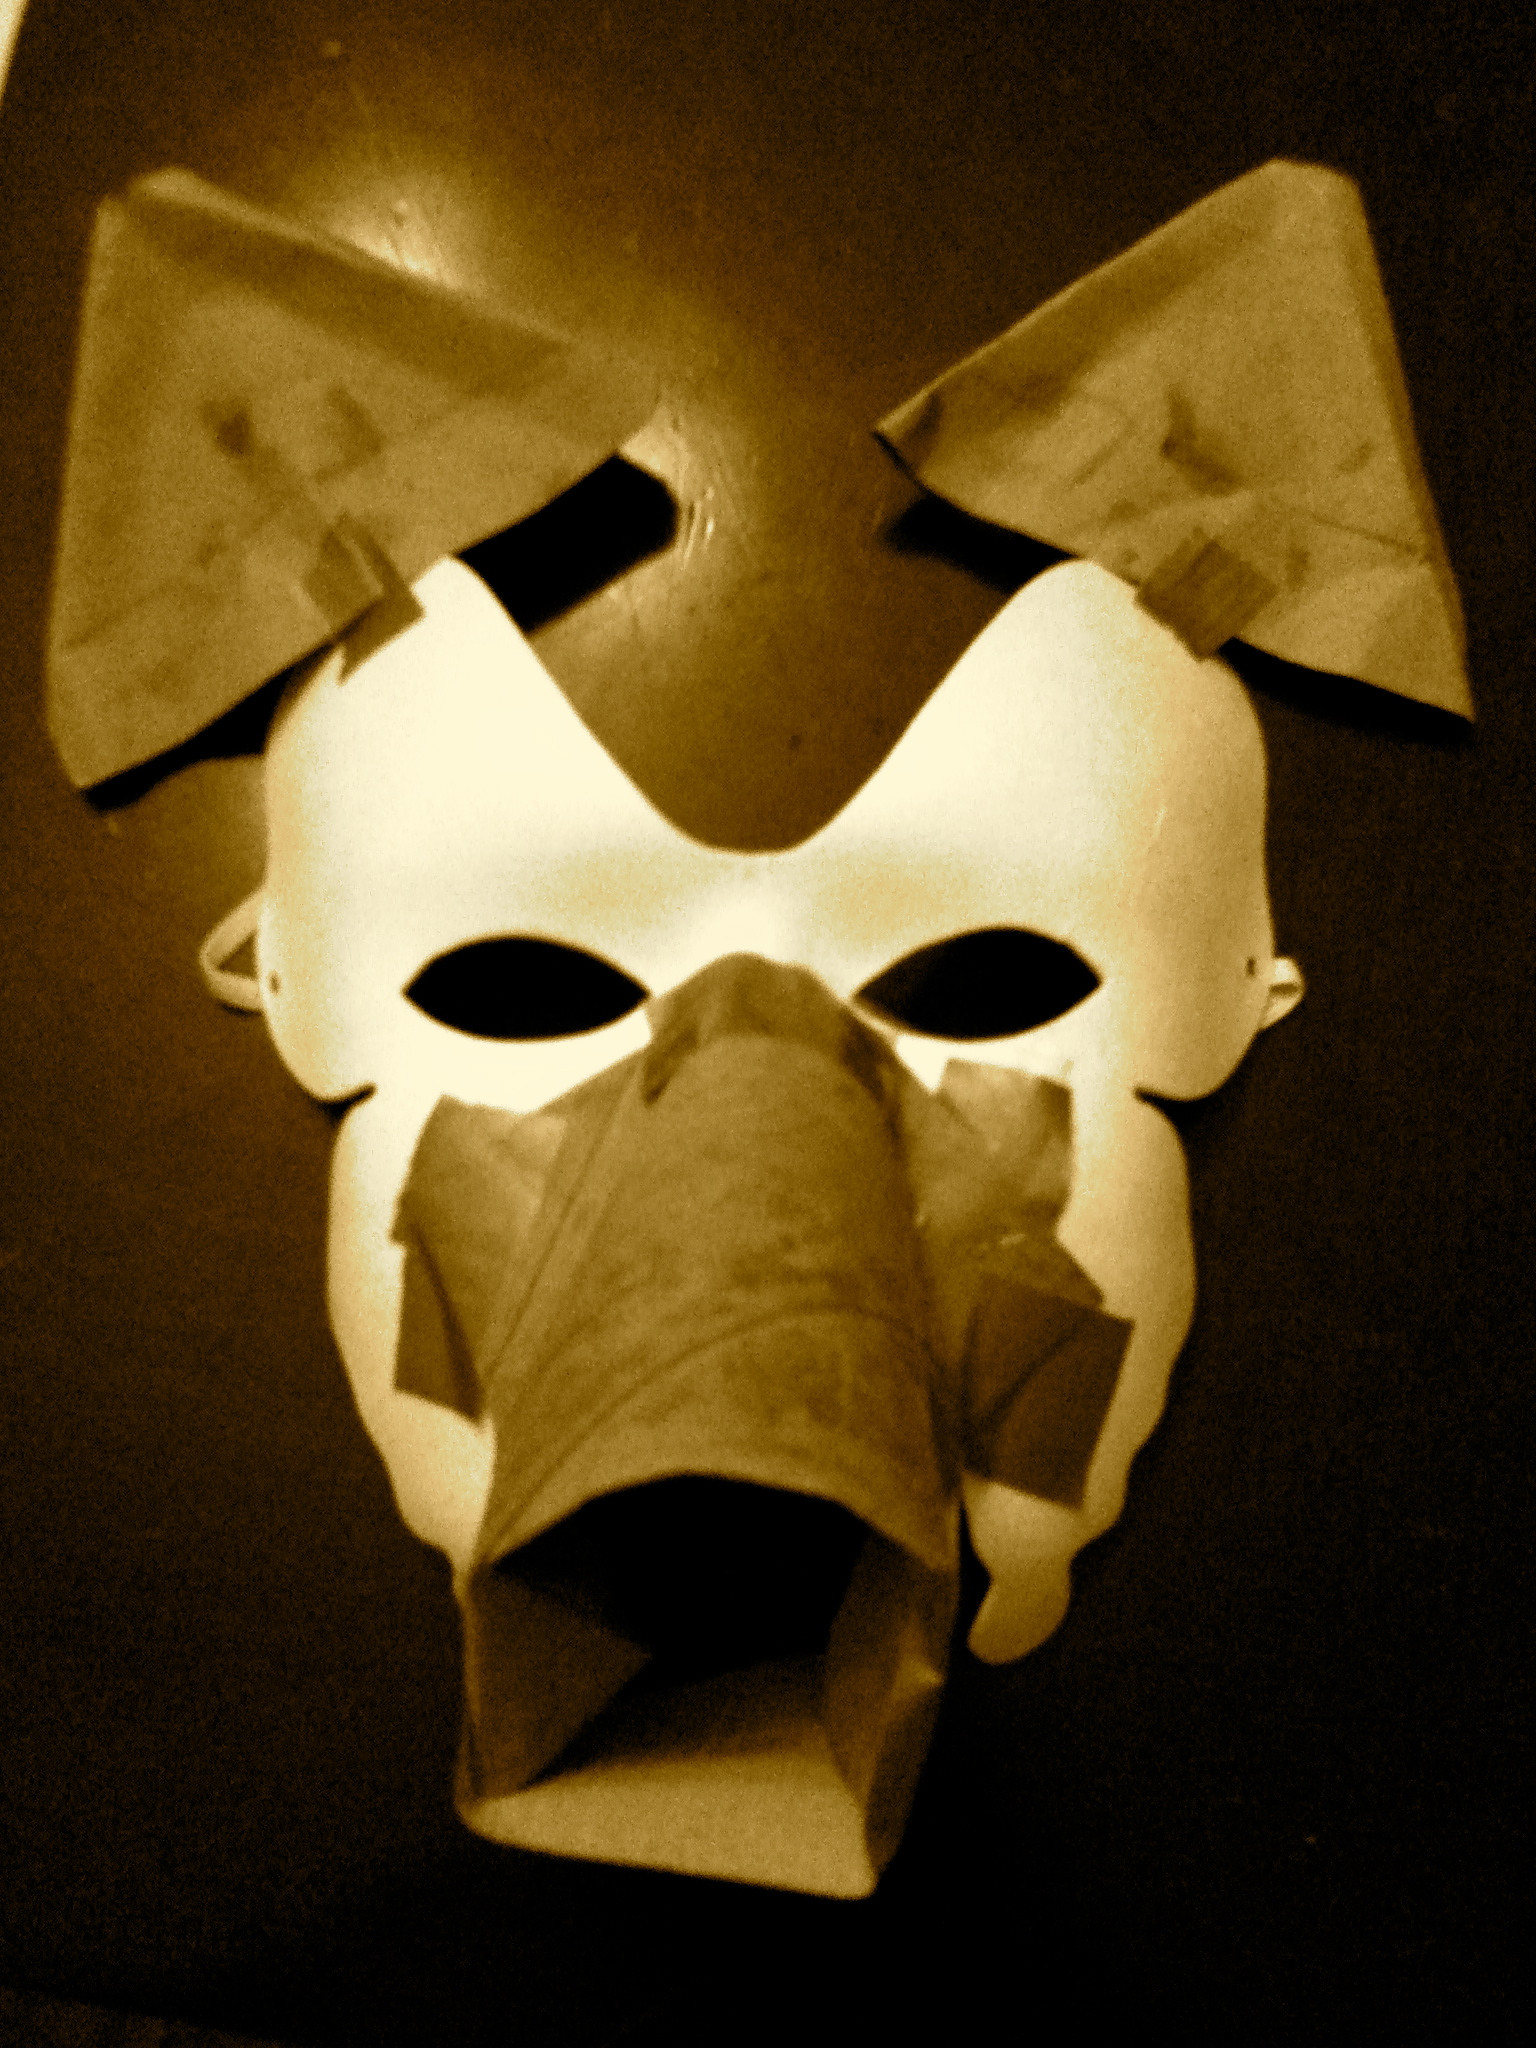 Best ideas about DIY Paper Mache Mask
. Save or Pin DIY Papier mâché wolf mask Now.